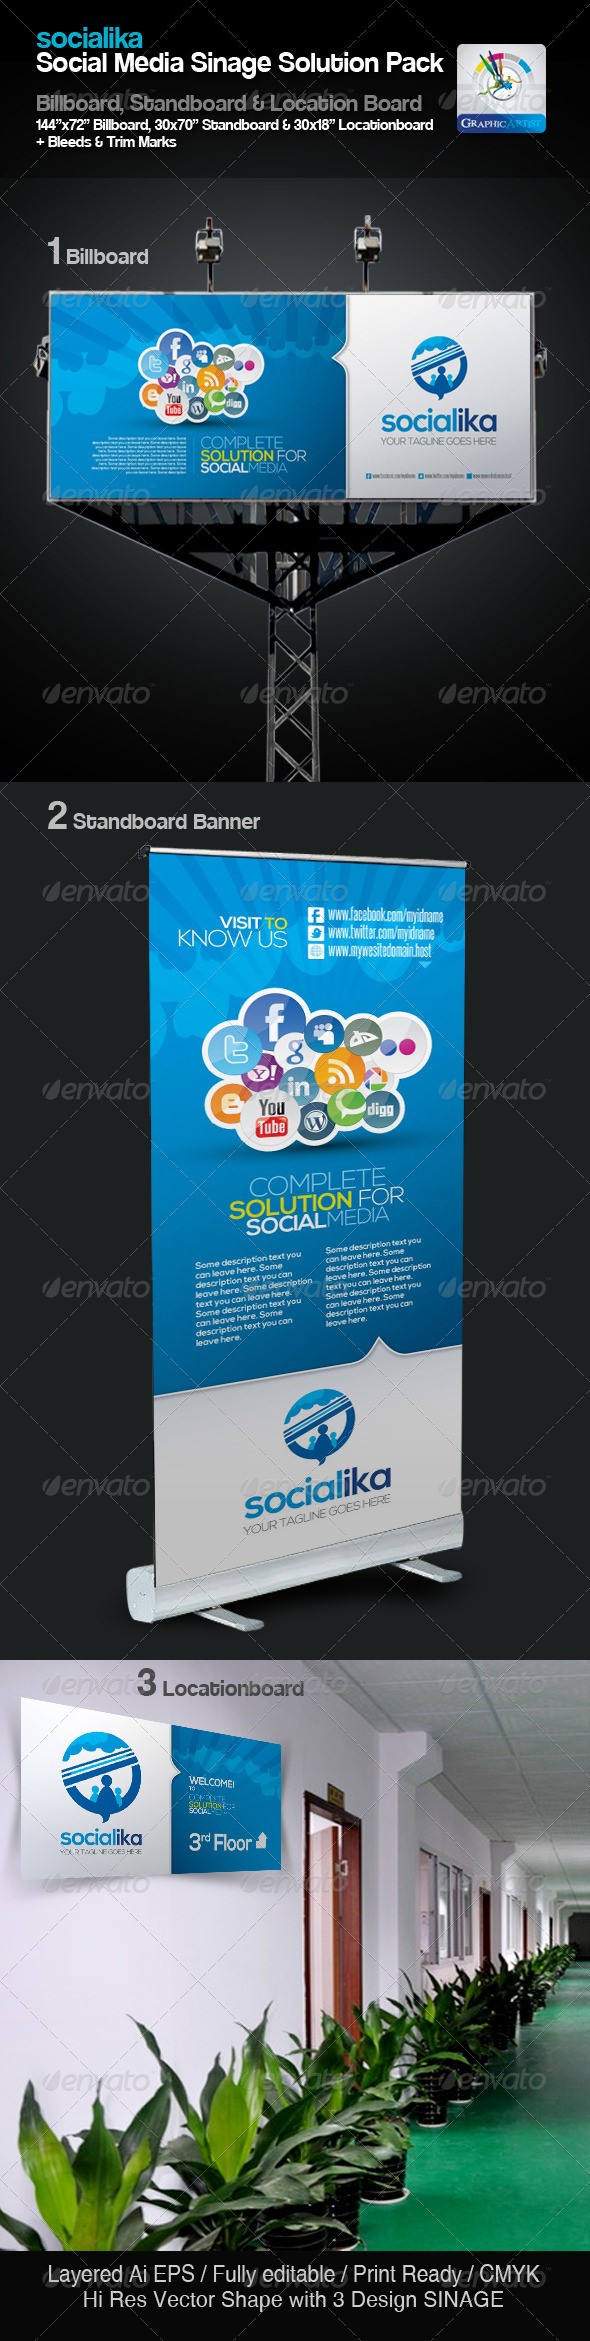 مجموعه علامت های شبکه های اجتماعی سوشیالیکا Socialika